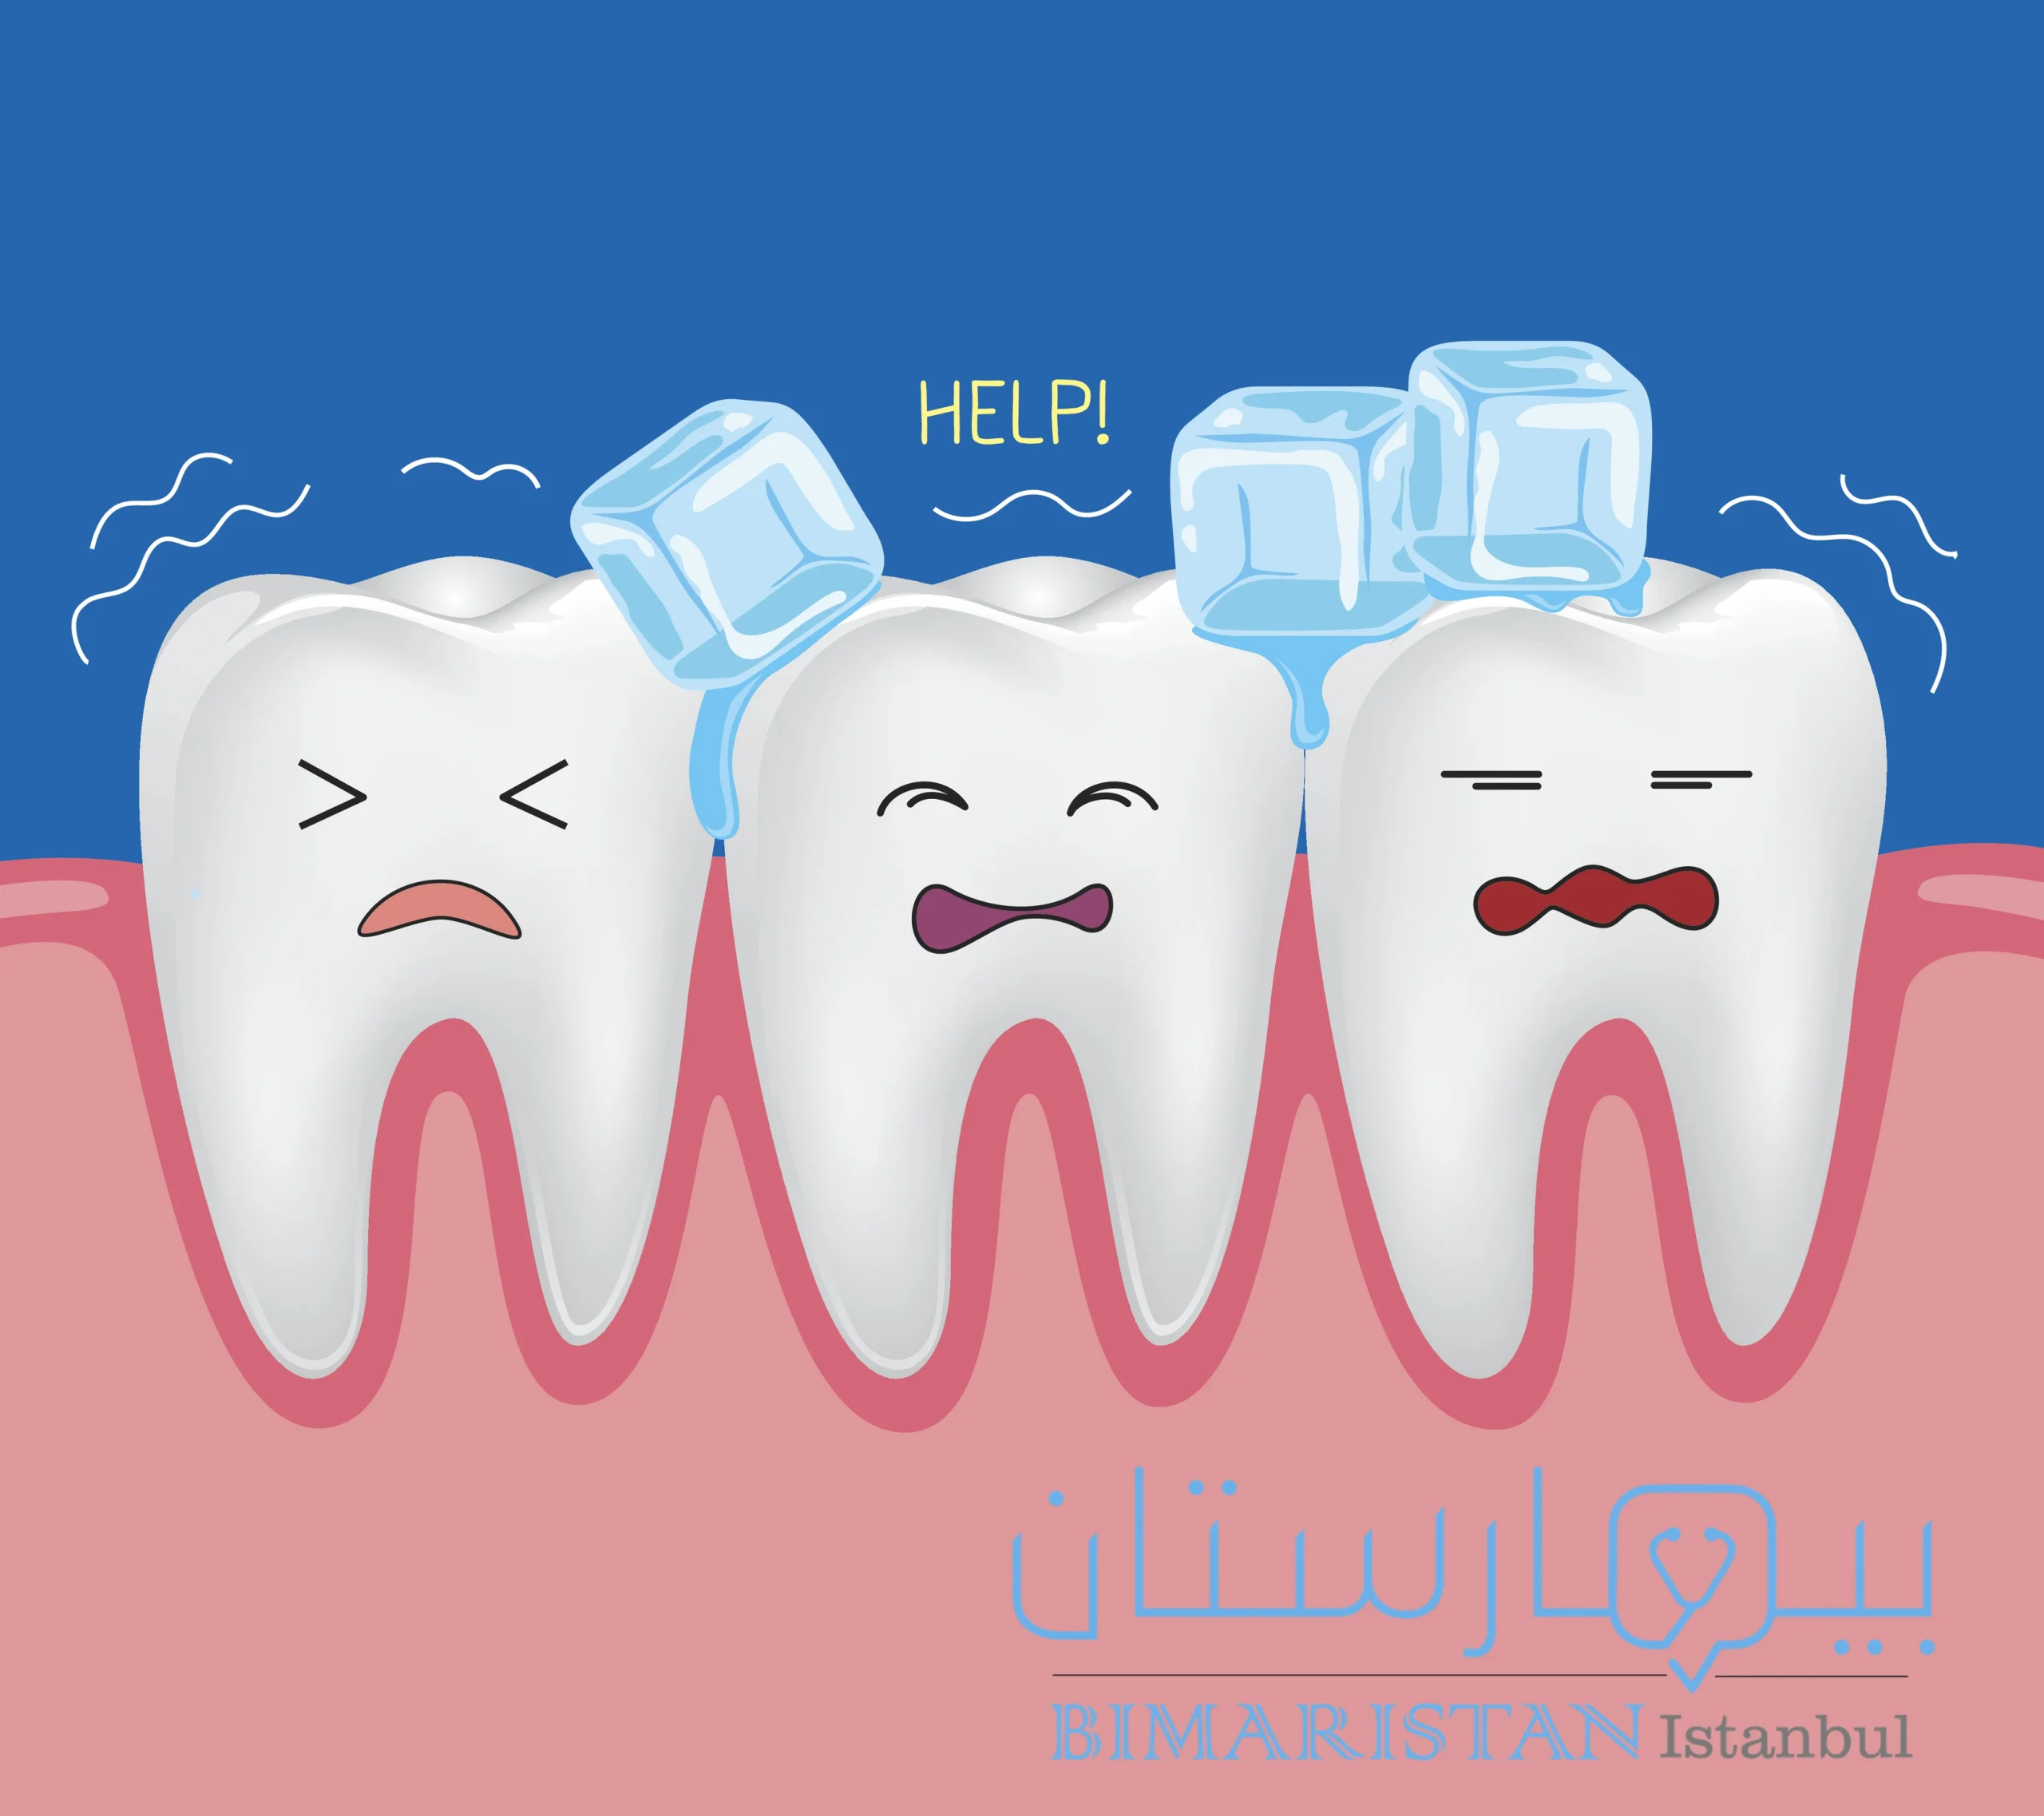 لتكون قادراً على علاج حساسية الأسنان من المفيد معرفة اسباب حدوثها